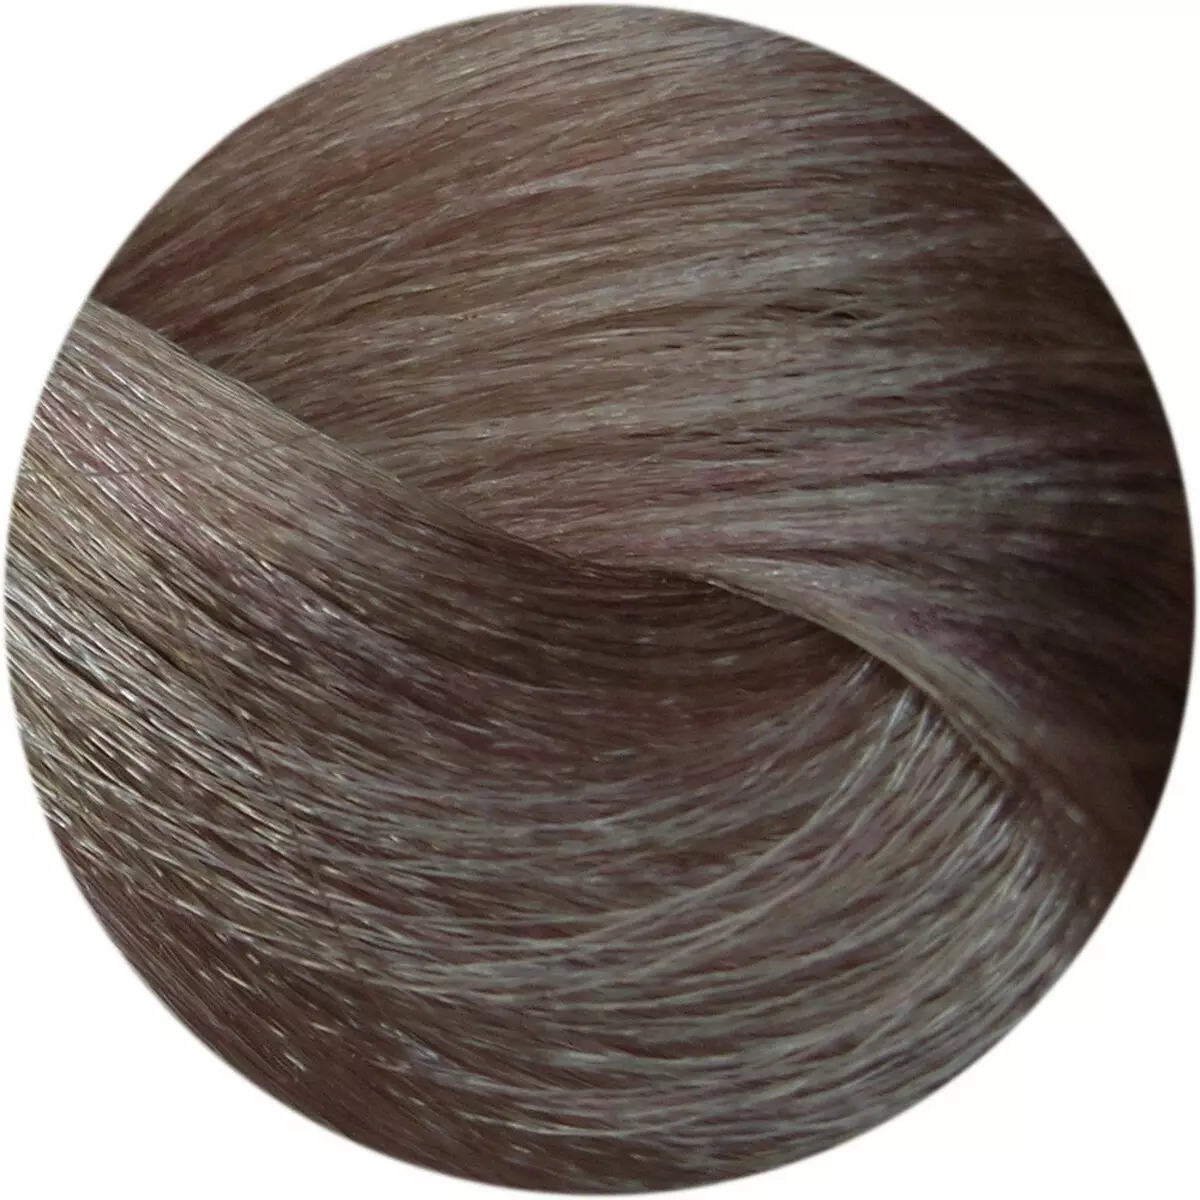 צבעי שיער (77 תמונות): תכונות של צביעת שיער באפר בלונדיני ואפר כהה, אפר בהיר וגוונים אחרים של צבע אפר 5440_49